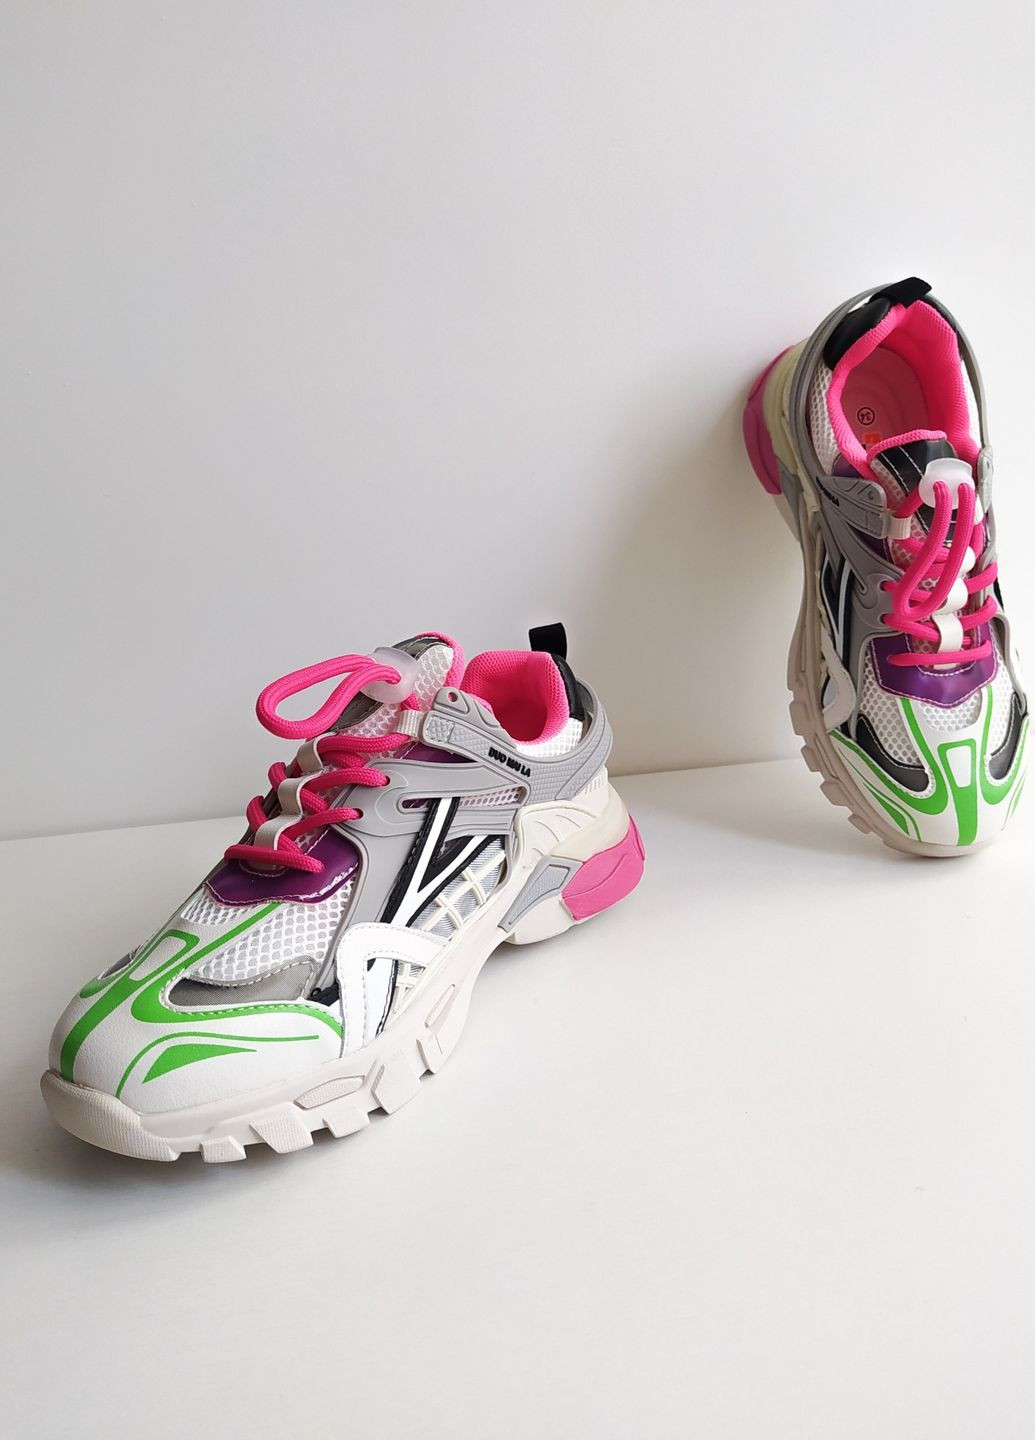 Рожеві дитячі кросівки 36 р 23 см рожевий артикул к212 Jong Golf